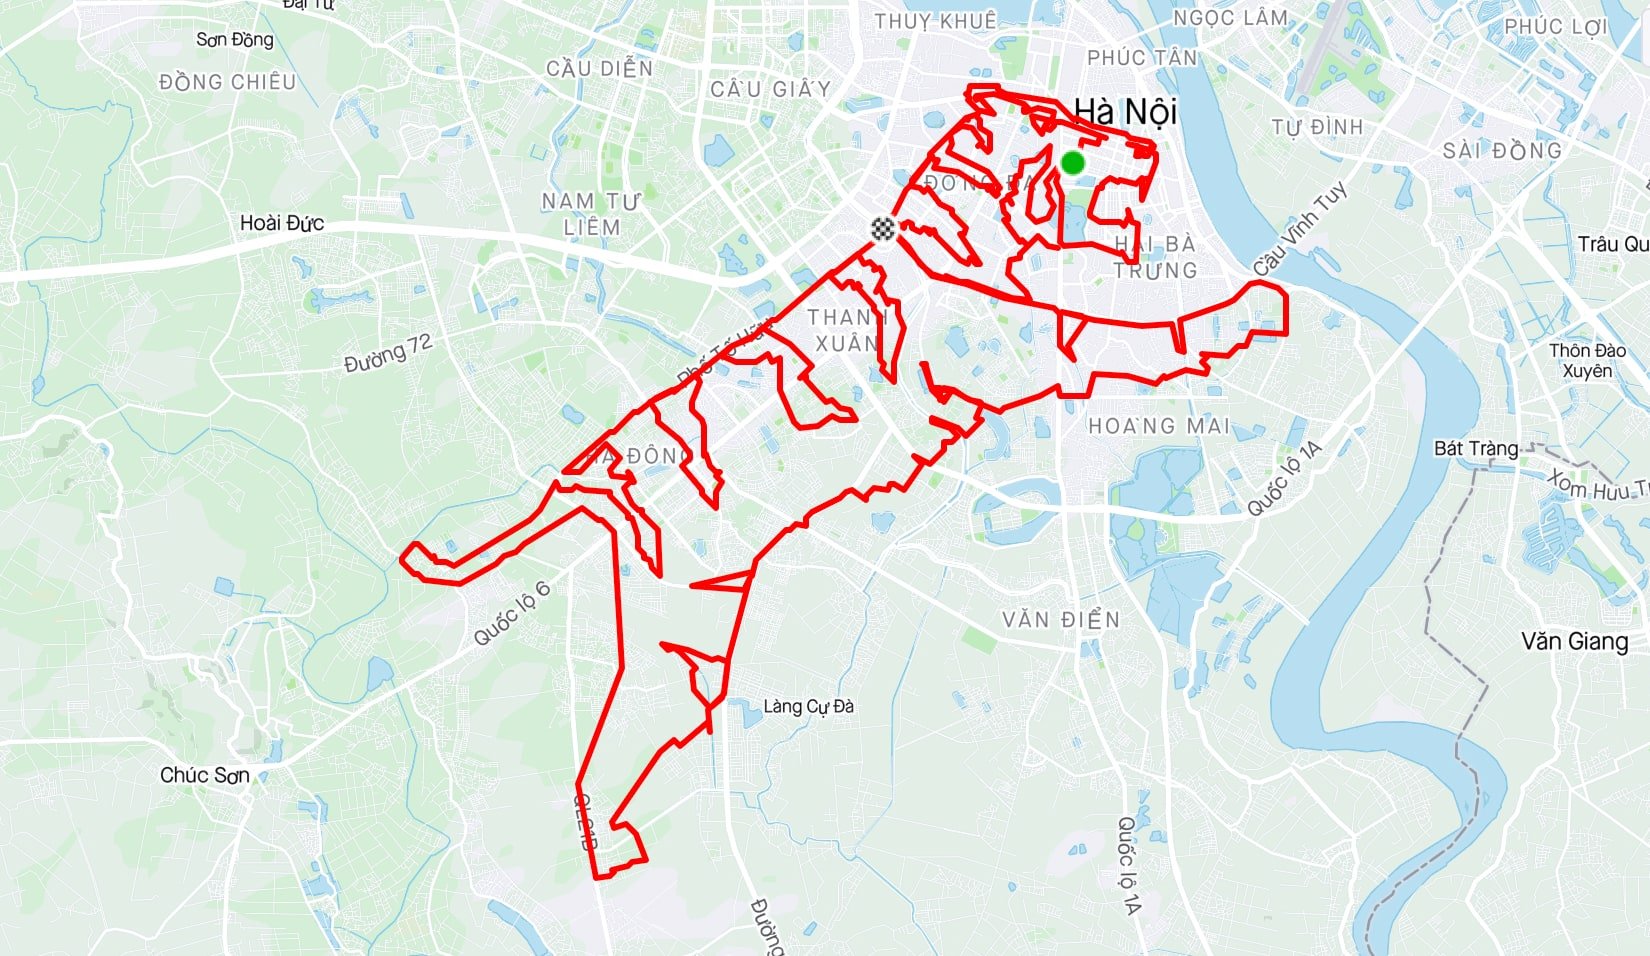 Runner Hà Nội đón tết Nhâm Dần bằng cách chạy bộ và đạp xe 135 km theo hình con hổ